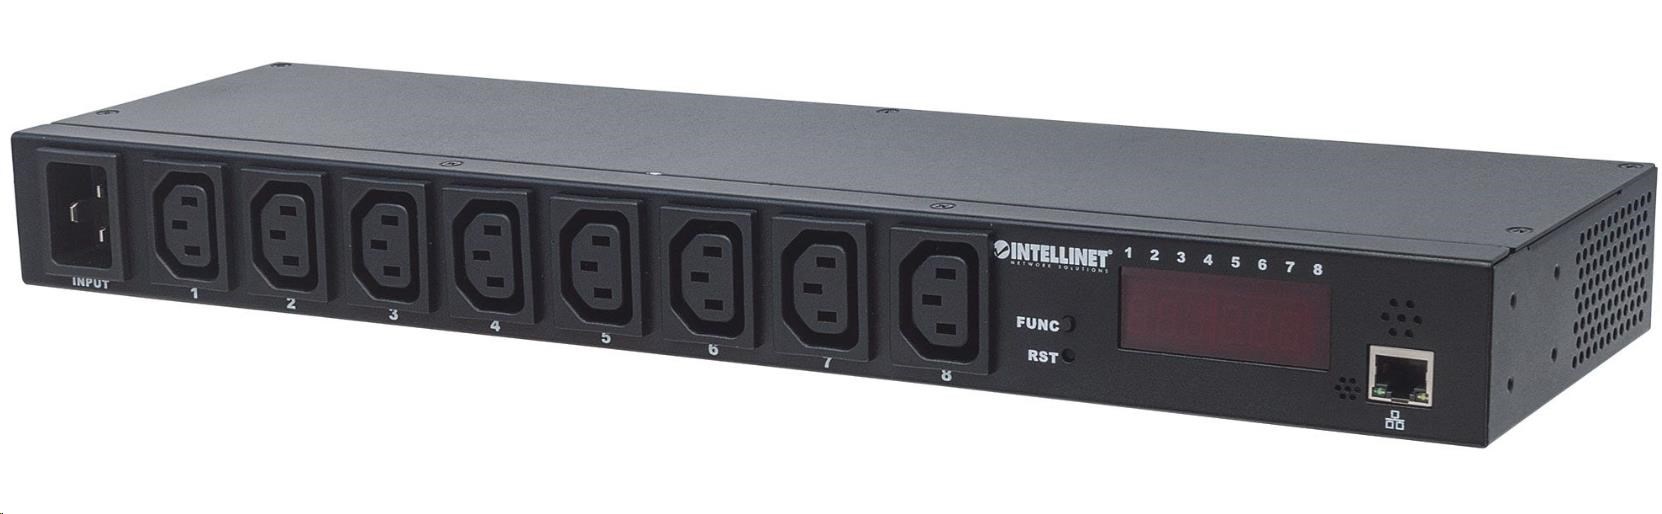 Intellinet distribučný panel PDU,  8x zásuvka C13,  rack 1U,  odpojiteľný kábel 16A,  monitorovanie1 